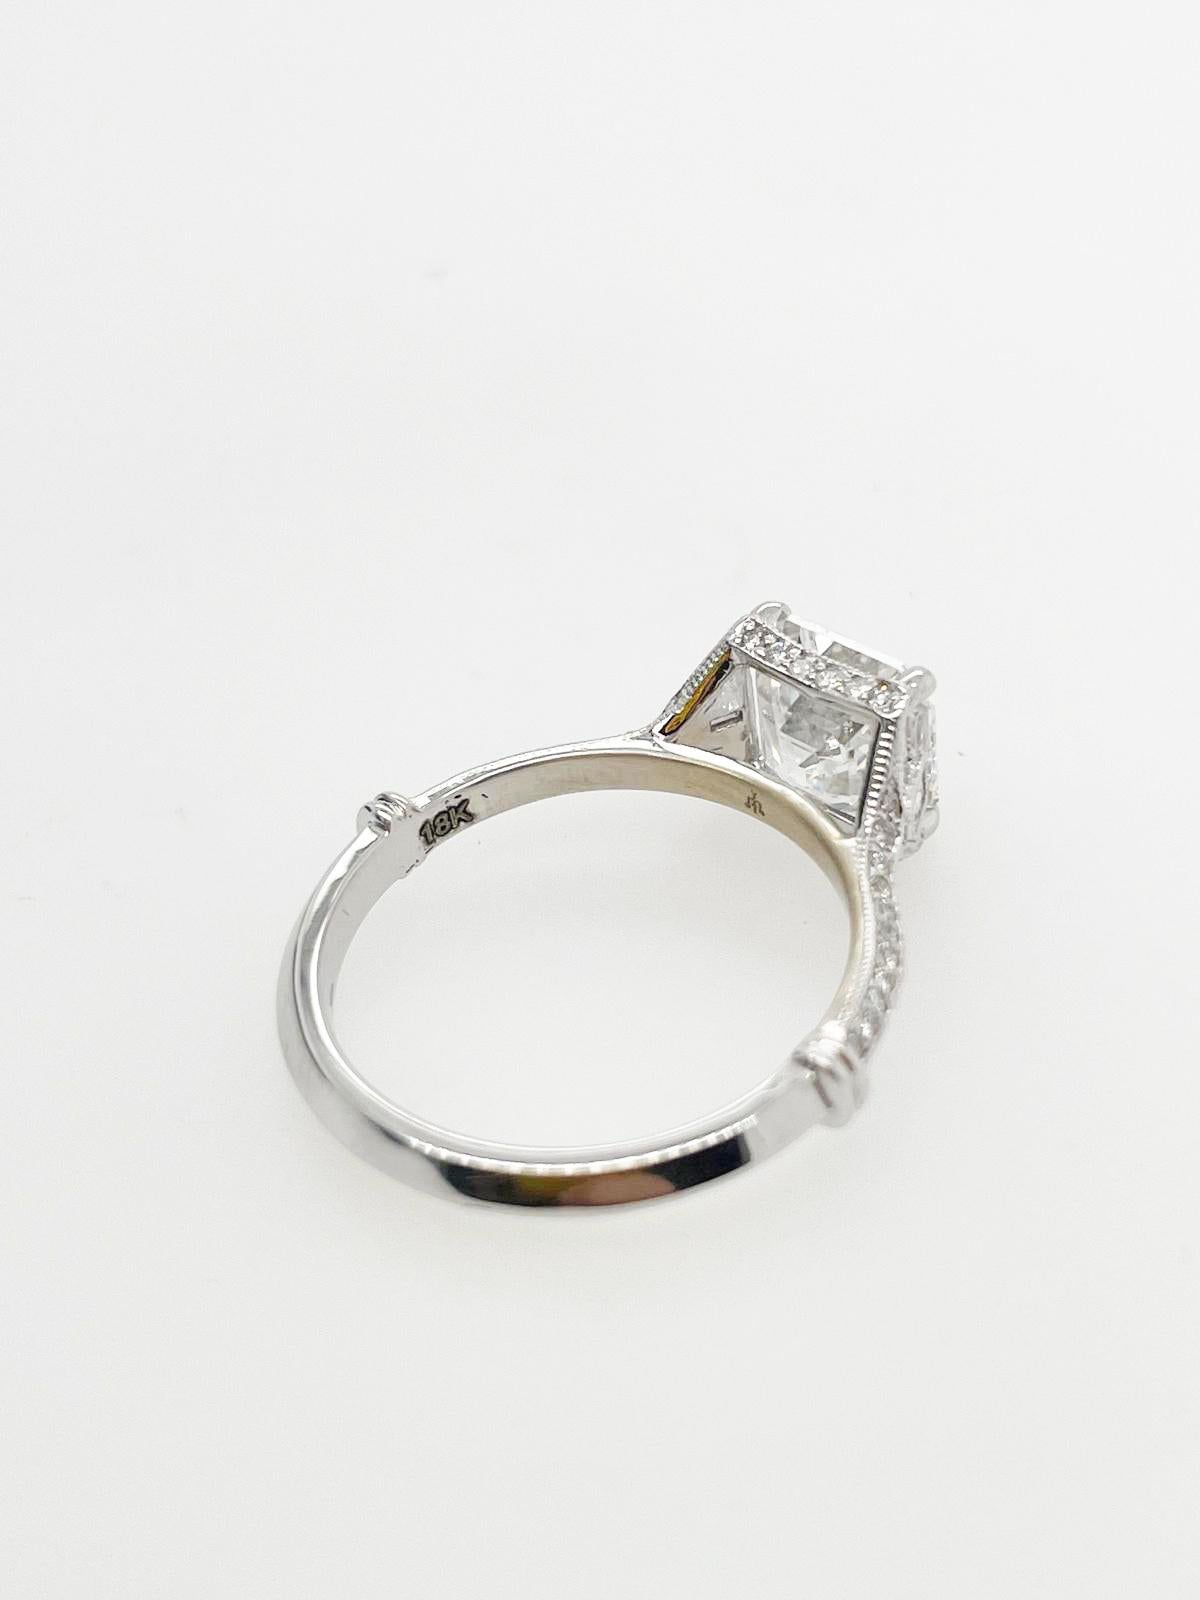 For Sale:  2ct Art Deco asscher cut diamond ring 8